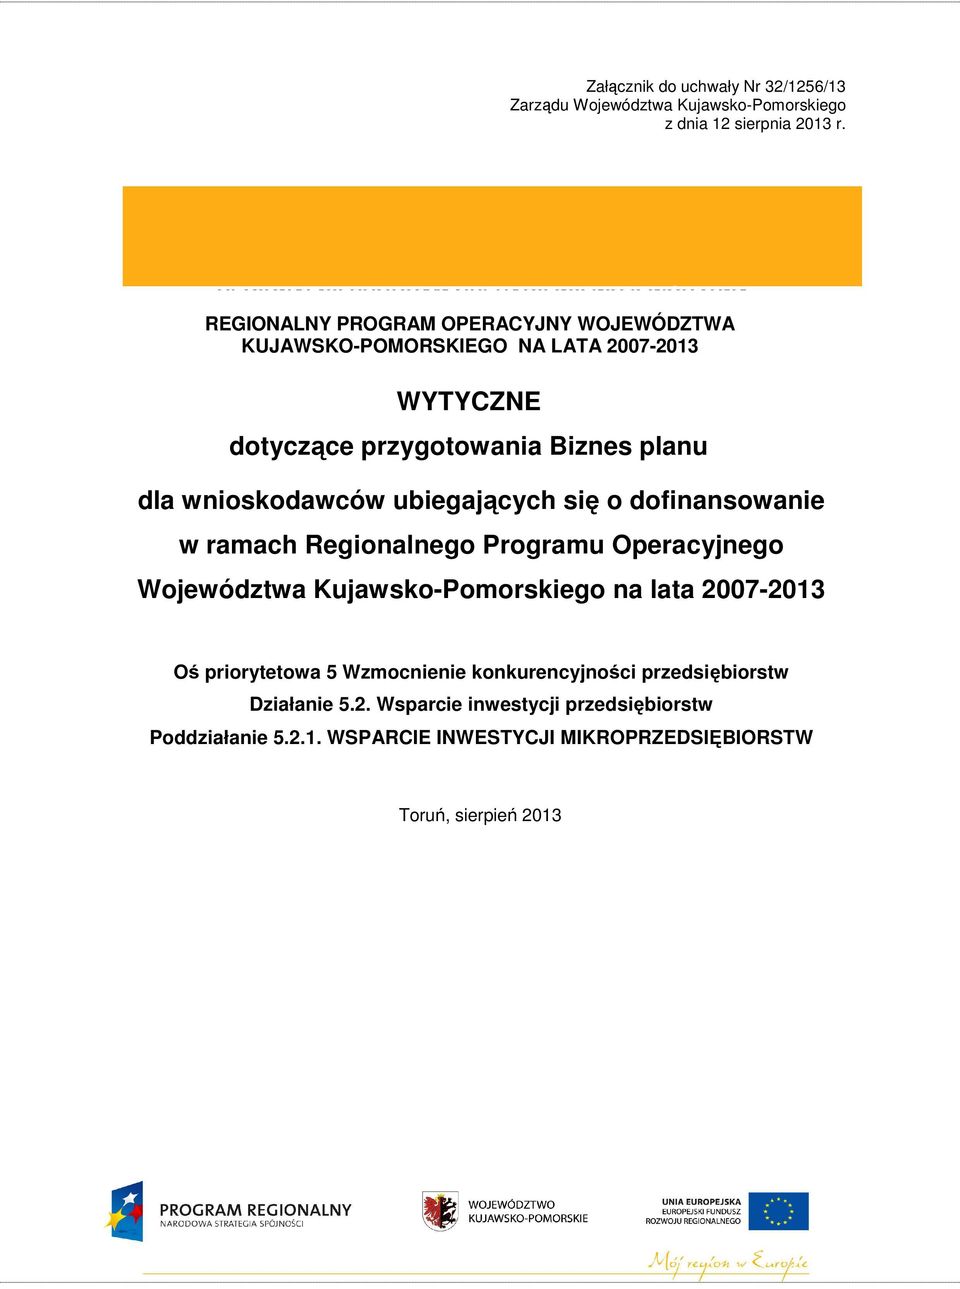 wnioskodawców ubiegających się o dofinansowanie w ramach Regionalnego Programu Operacyjnego Województwa Kujawsko-Pomorskiego na lata 2007-2013